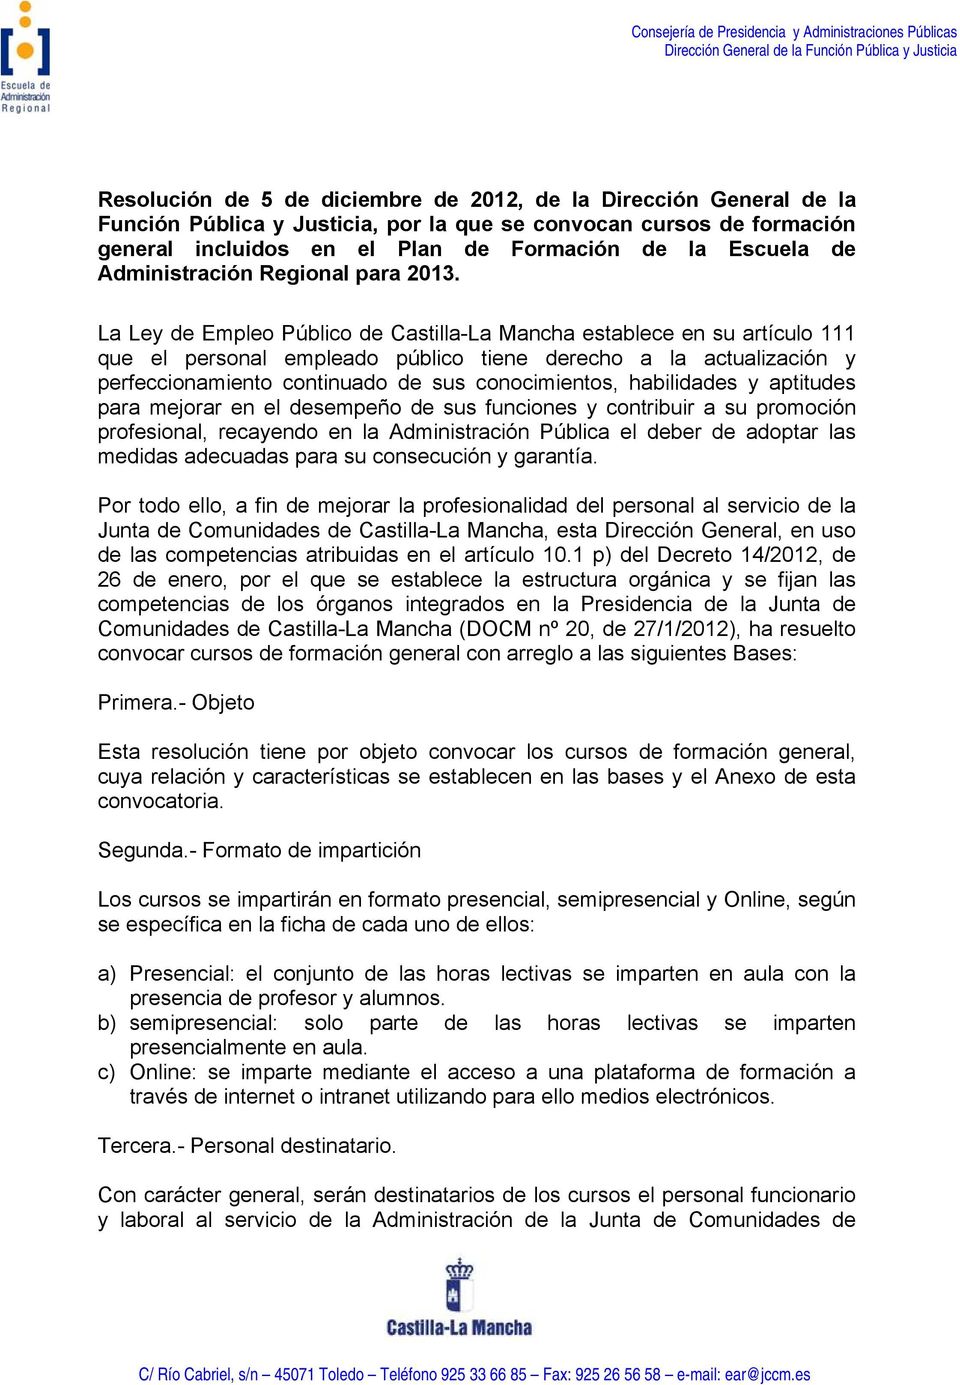 La Ley de Empleo Público de Castilla-La Mancha establece en su artículo 111 que el personal empleado público tiene derecho a la actualización y perfeccionamiento continuado de sus conocimientos,